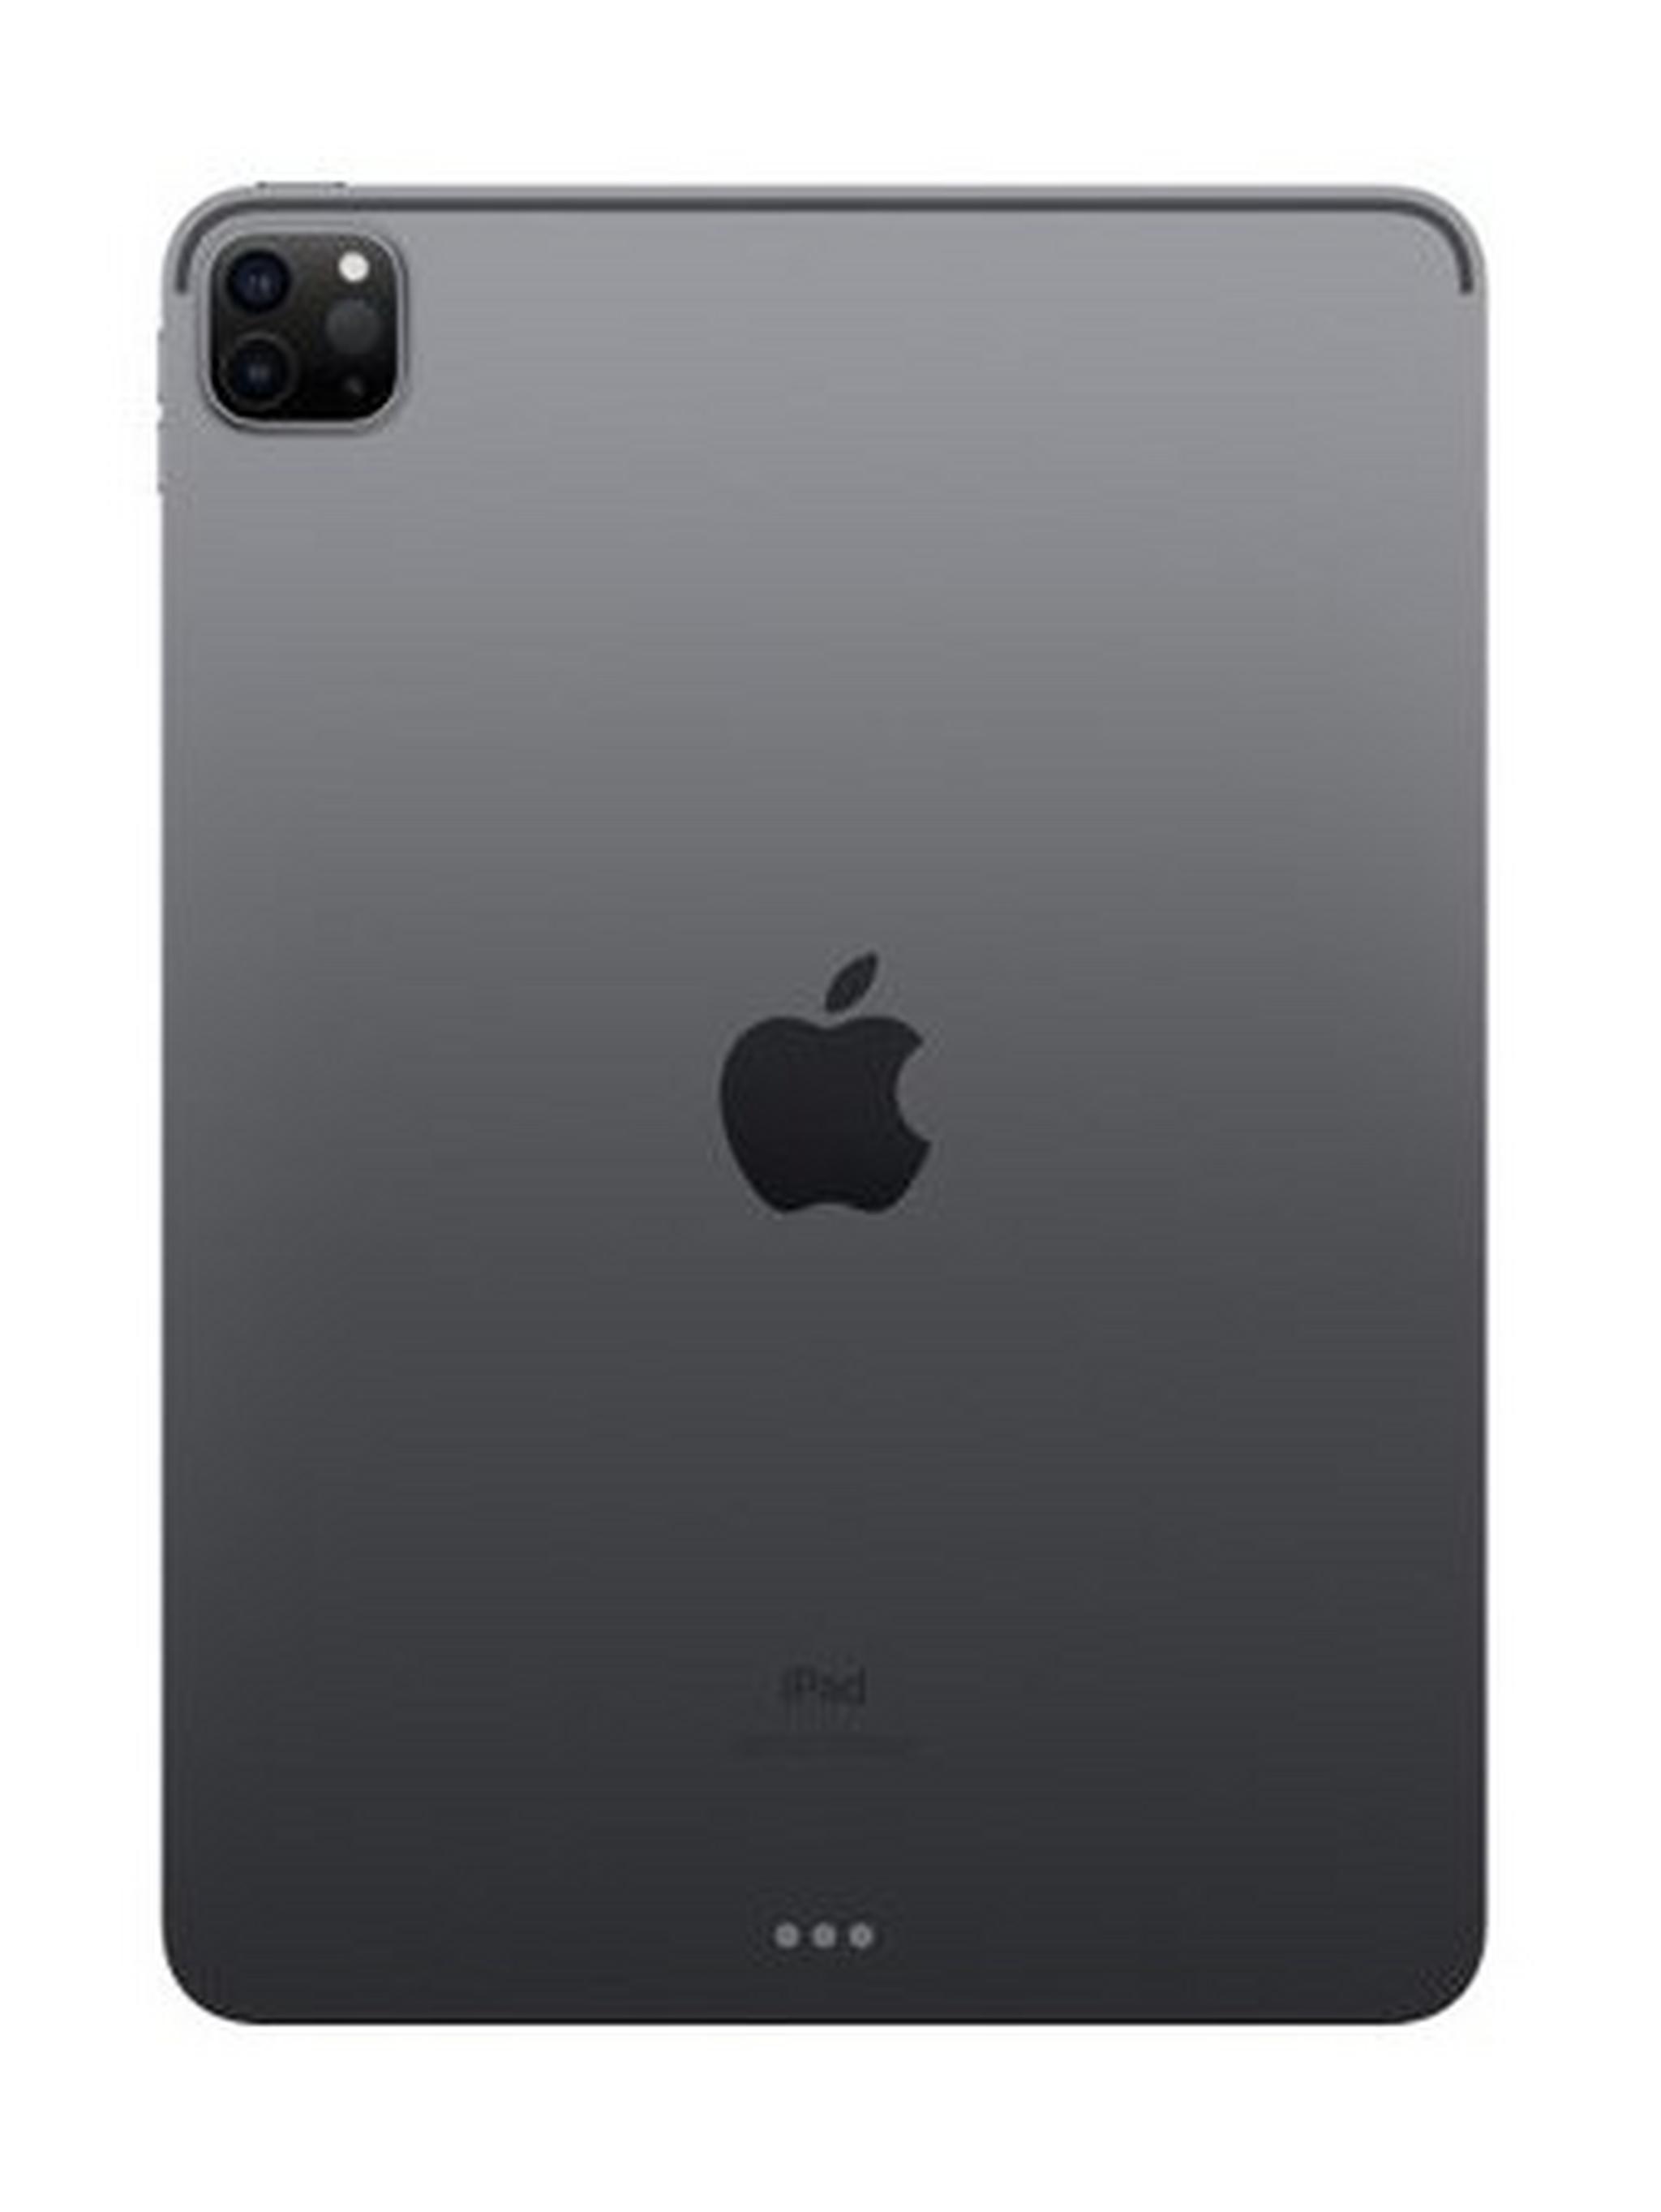 Apple IPad Pro (2020) 11-inch 128GB WiFi – Space Grey